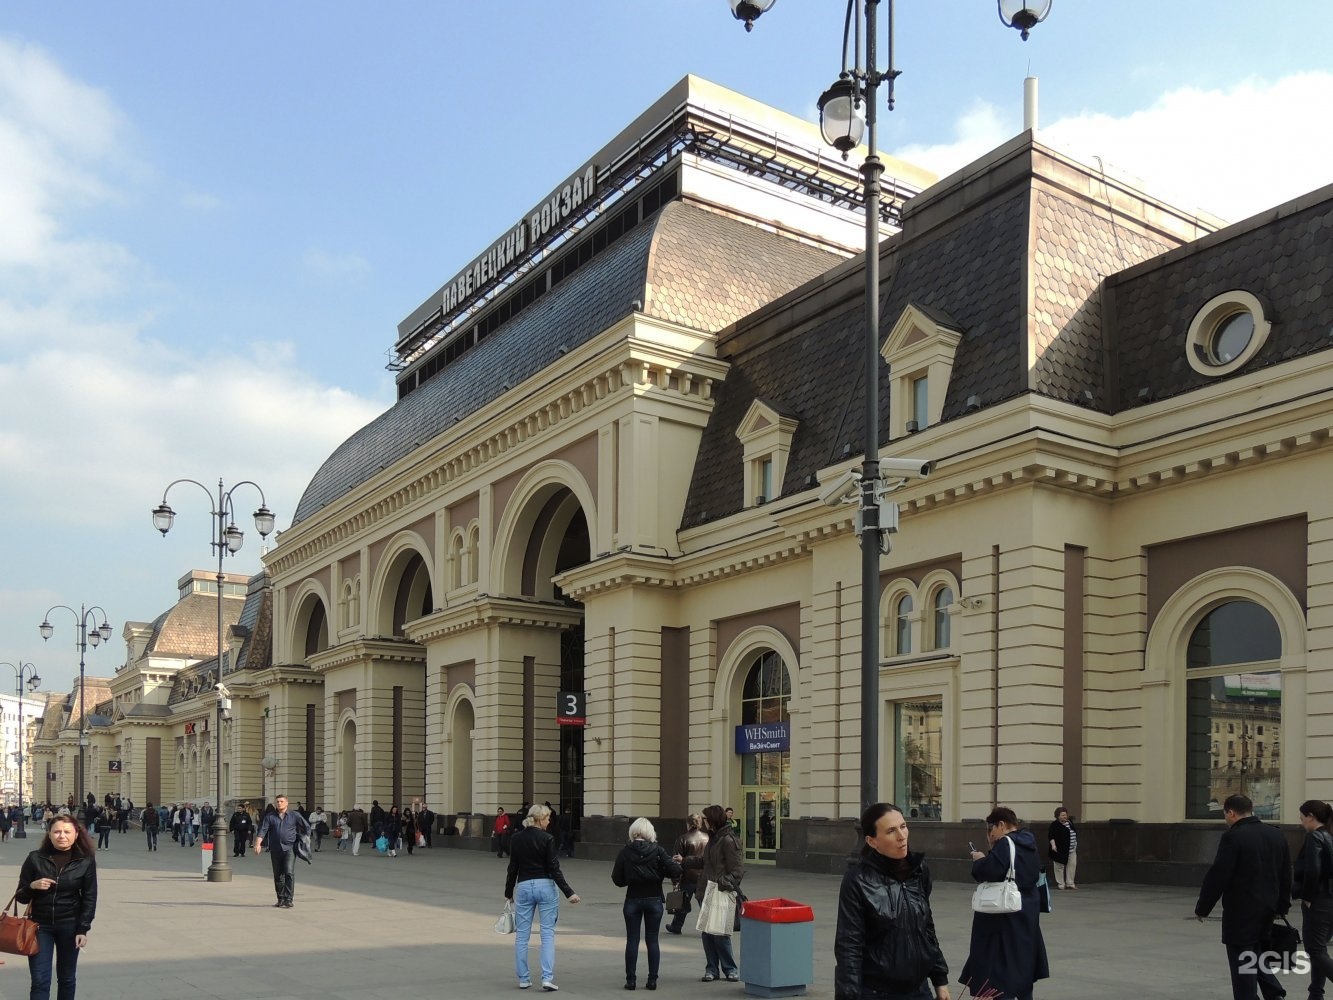 Фото павелецкого вокзала в москве сейчас